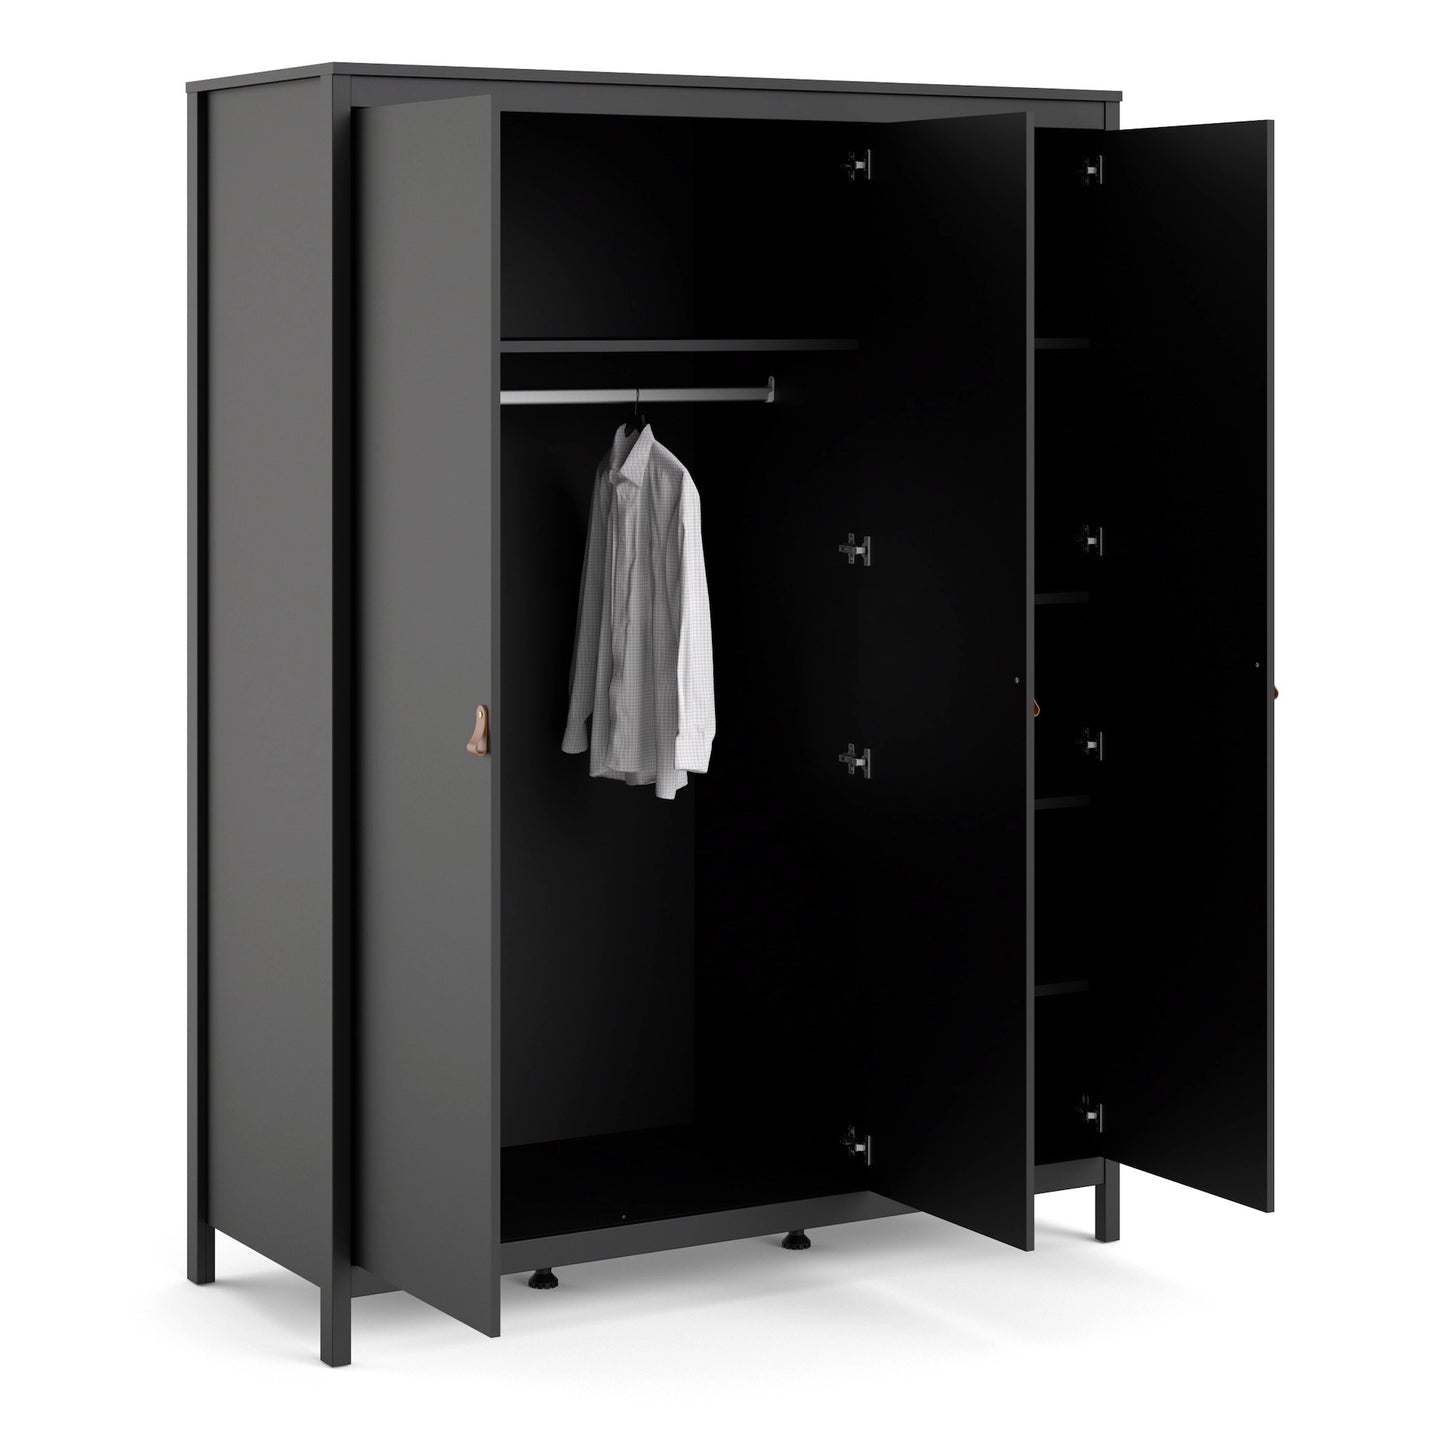 Furniture To Go Barcelona Wardrobe with 3 Doors in Matt Black